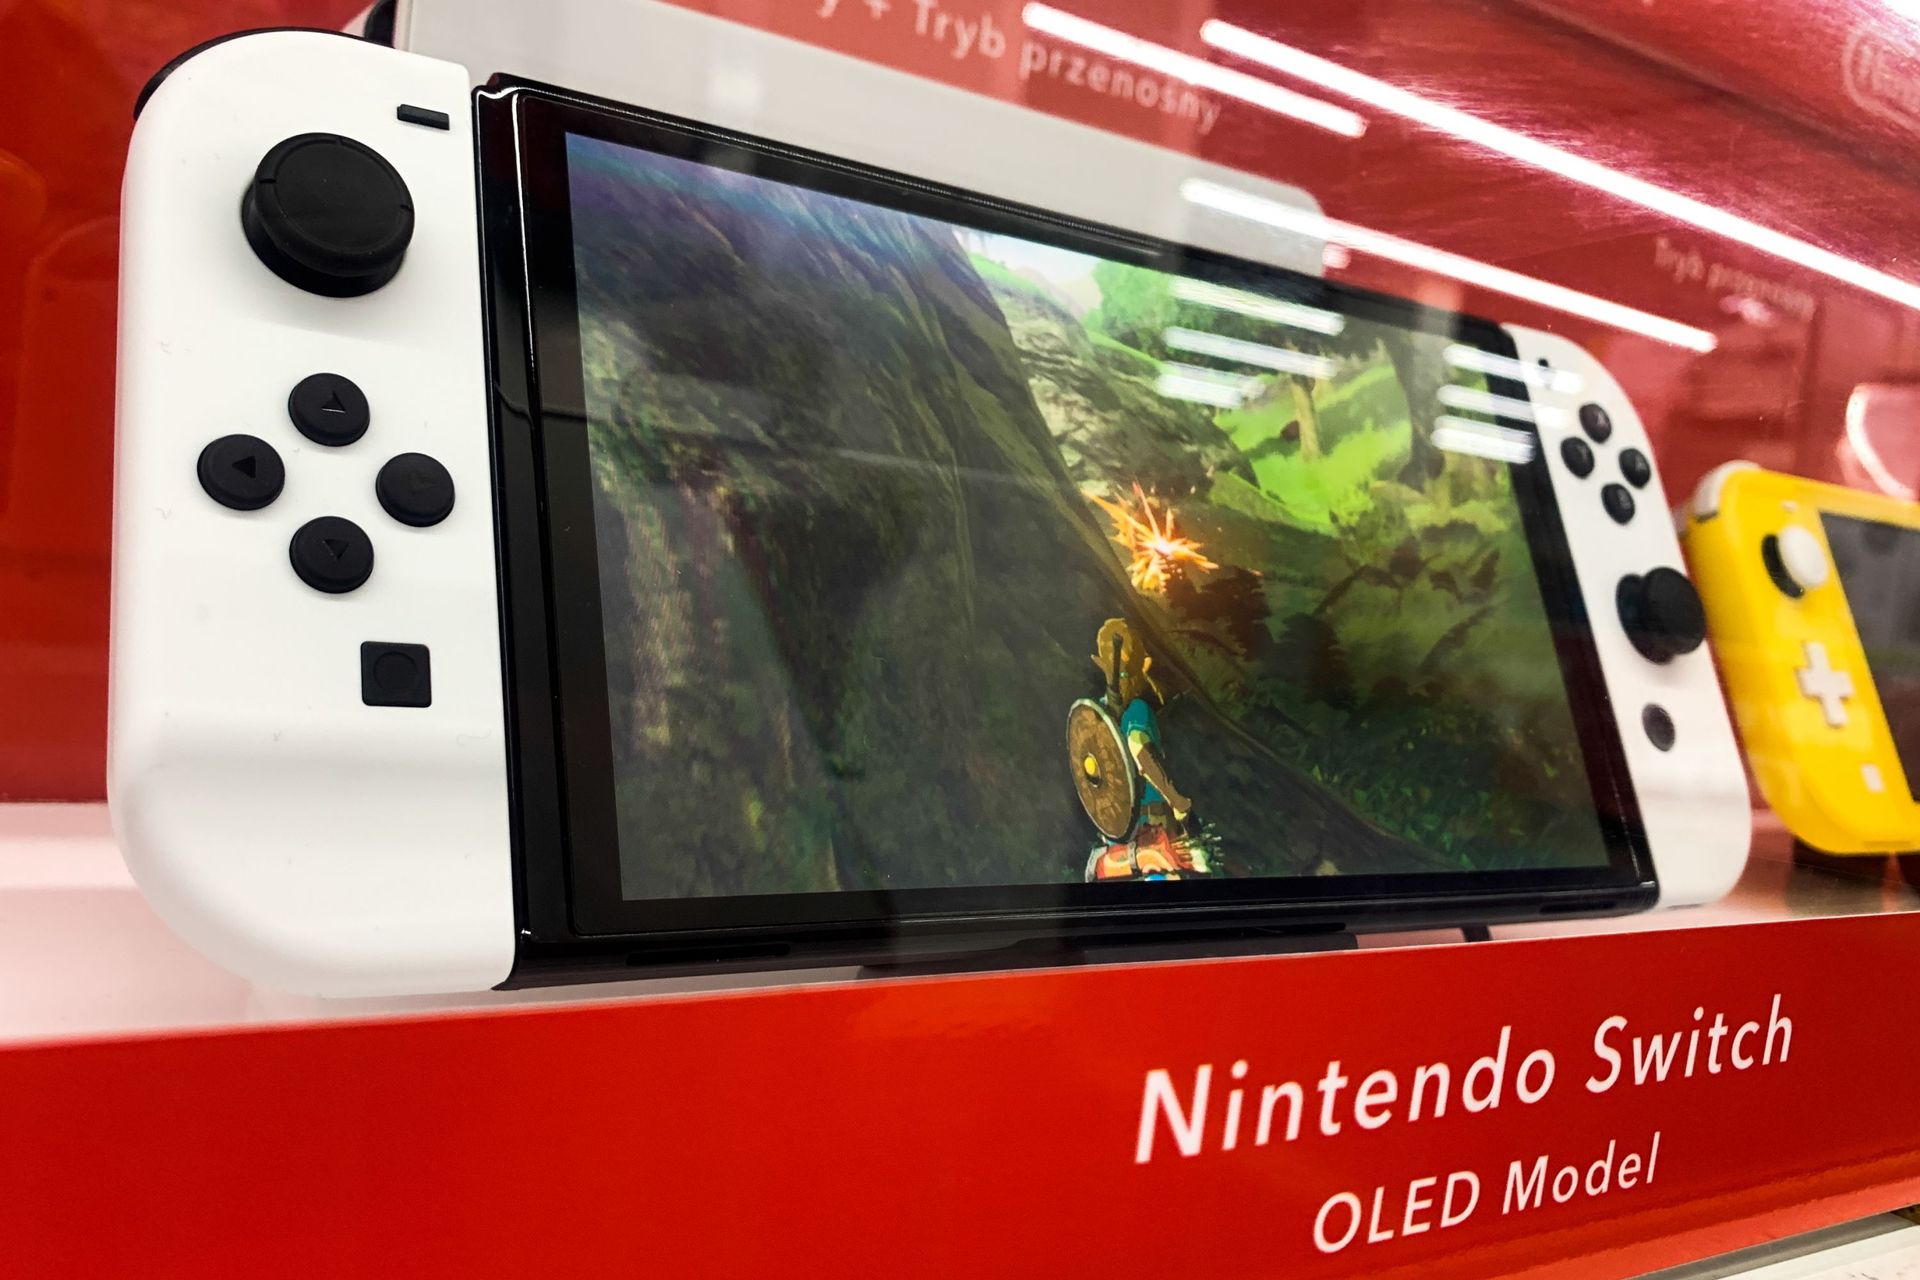 Jeux Nintendo Switch à venir - octobre 2023, News